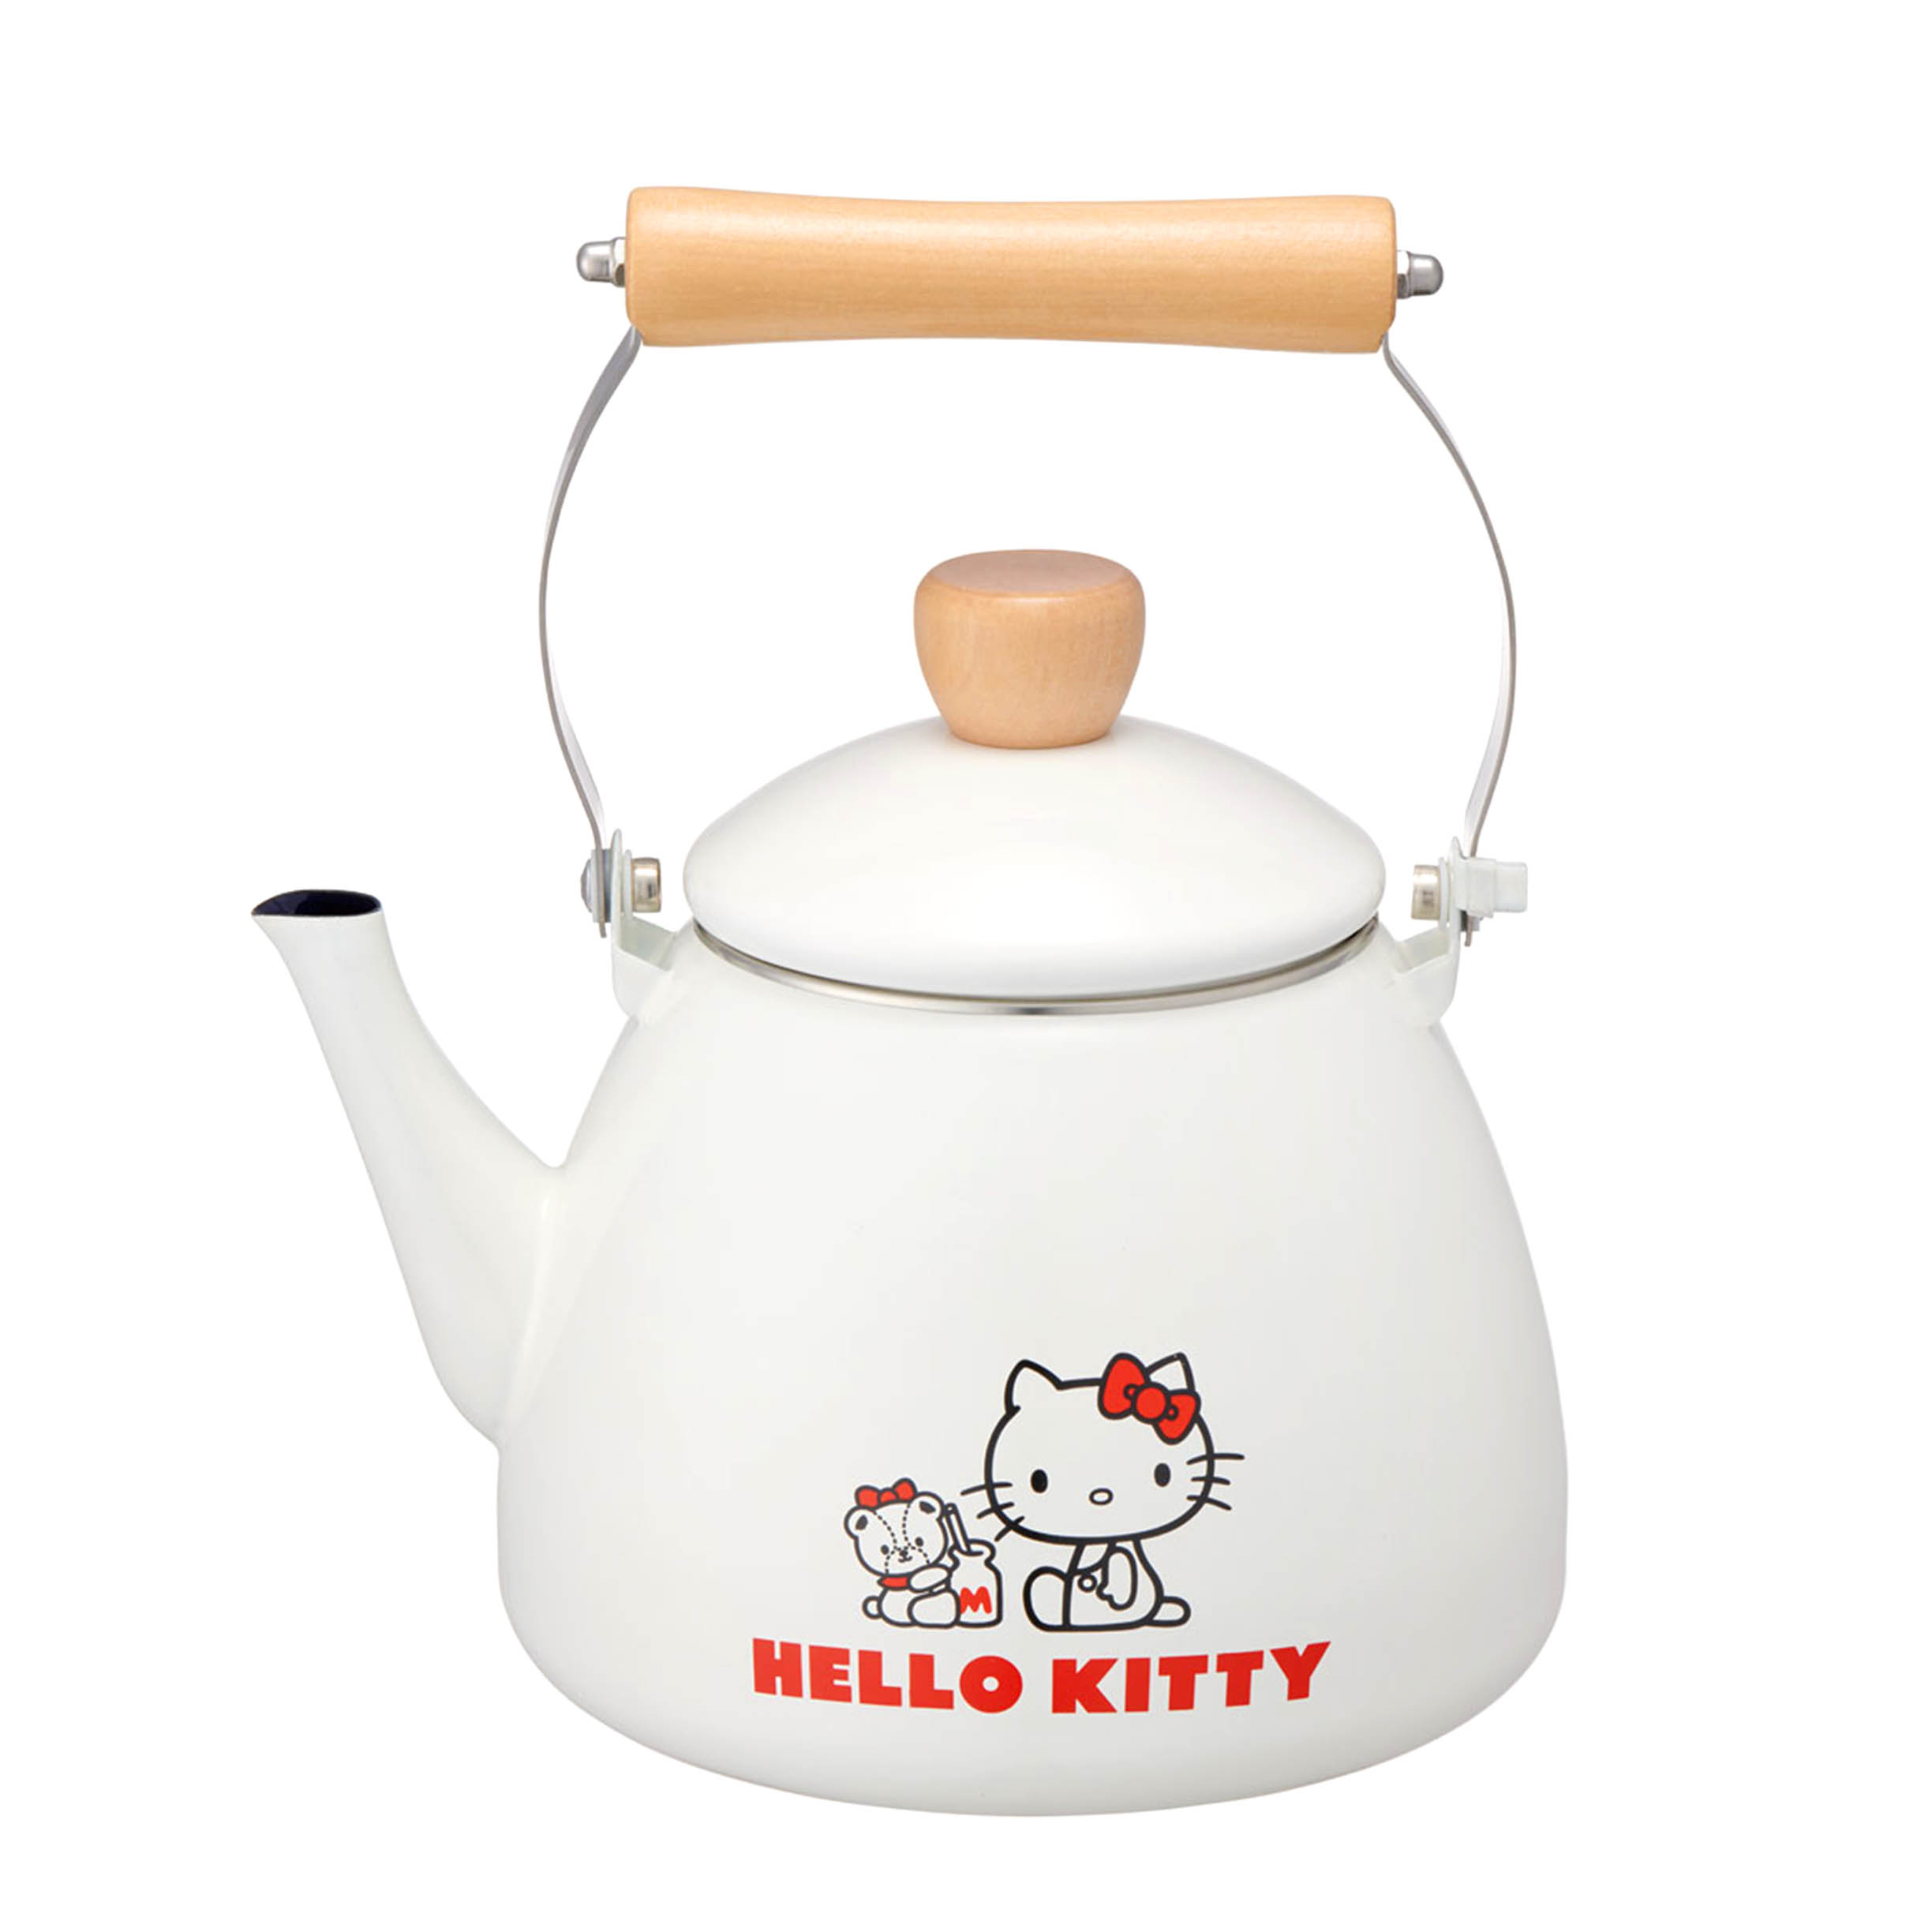 琺瑯搪瓷茶壺 2L-凱蒂貓 HELLO KITTY SKATER 三麗鷗 Sanrio 日本進口正版授權